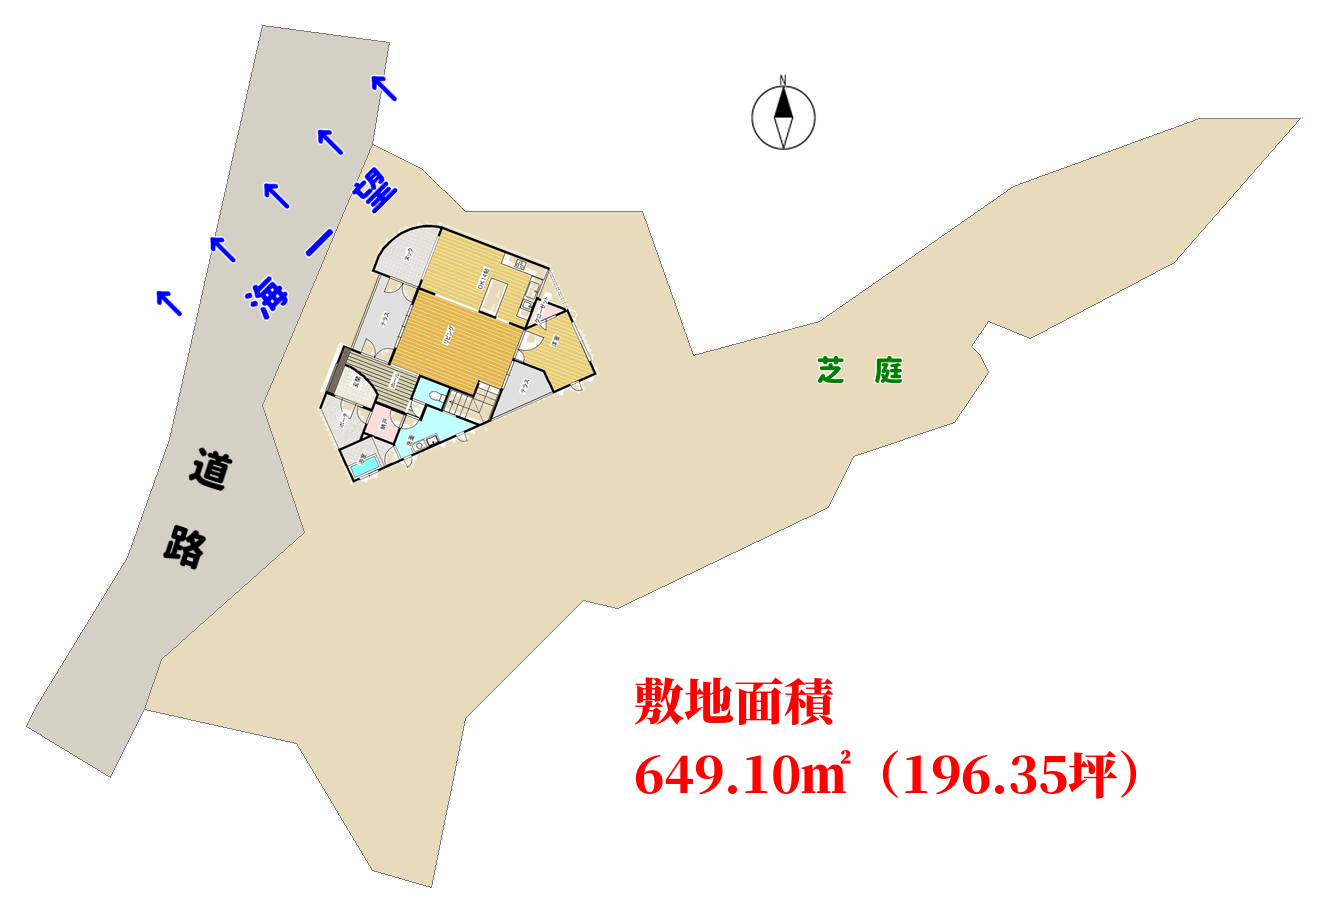 館山市坂田、別荘の敷地図